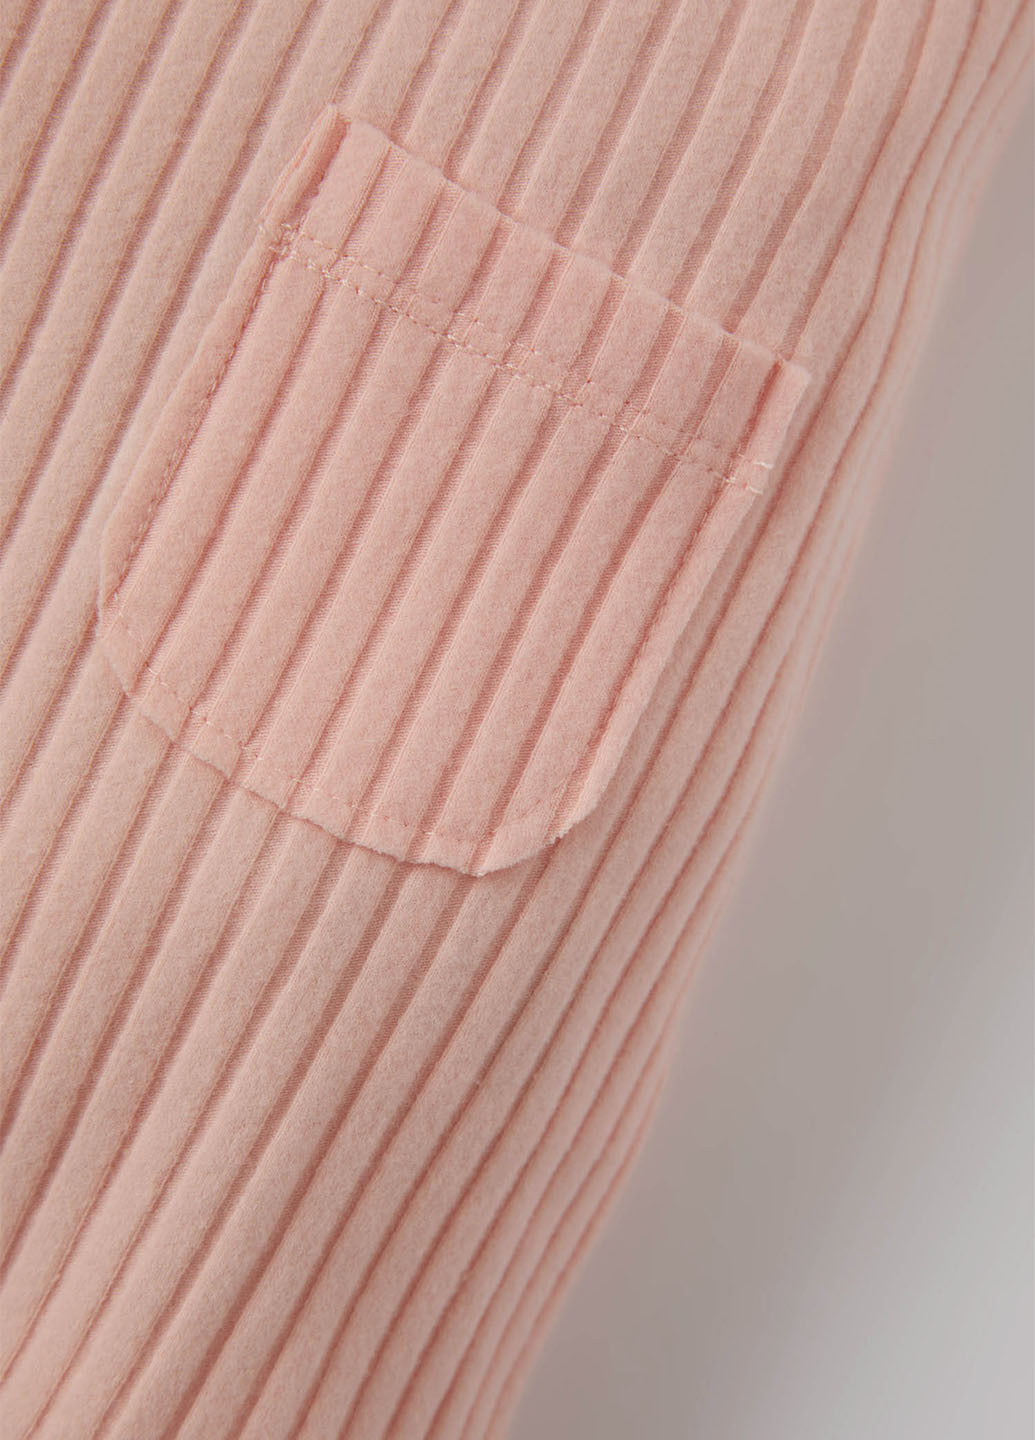 Комбинезон DeFacto комбинезон-брюки розовый кэжуал полиэстер, трикотаж